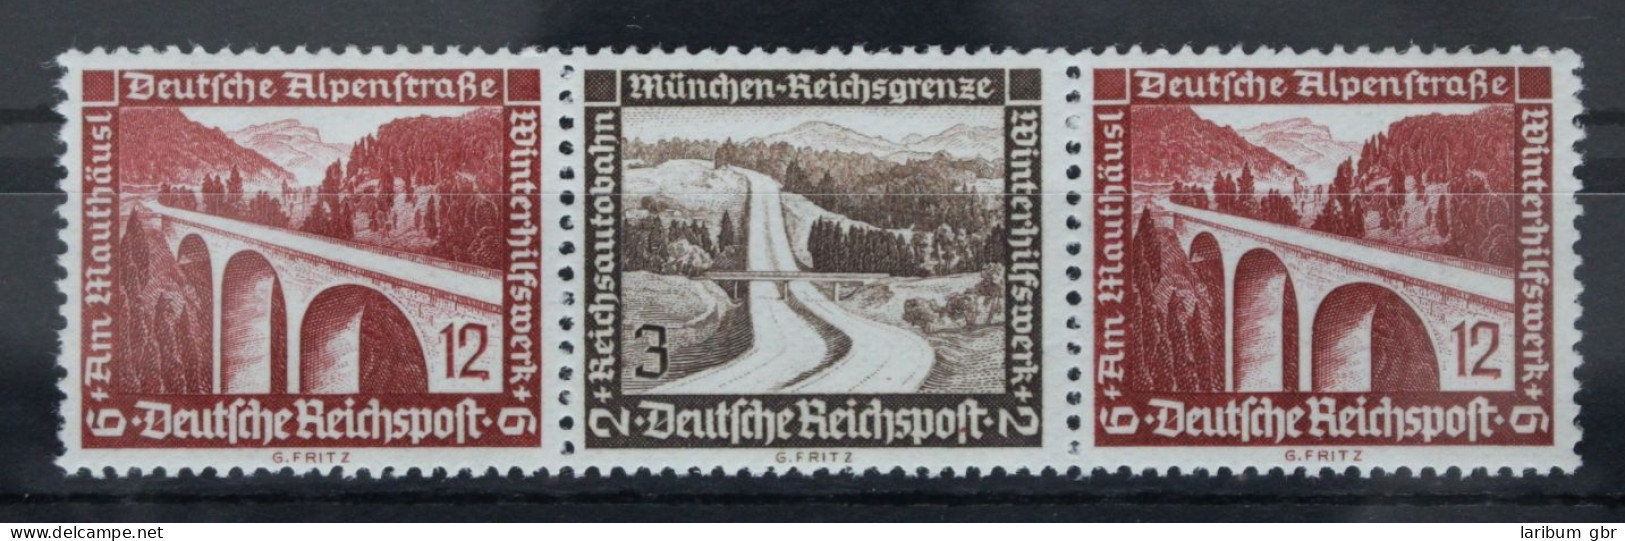 Deutsches Reich Zd W118 Postfrisch #FI012 - Se-Tenant